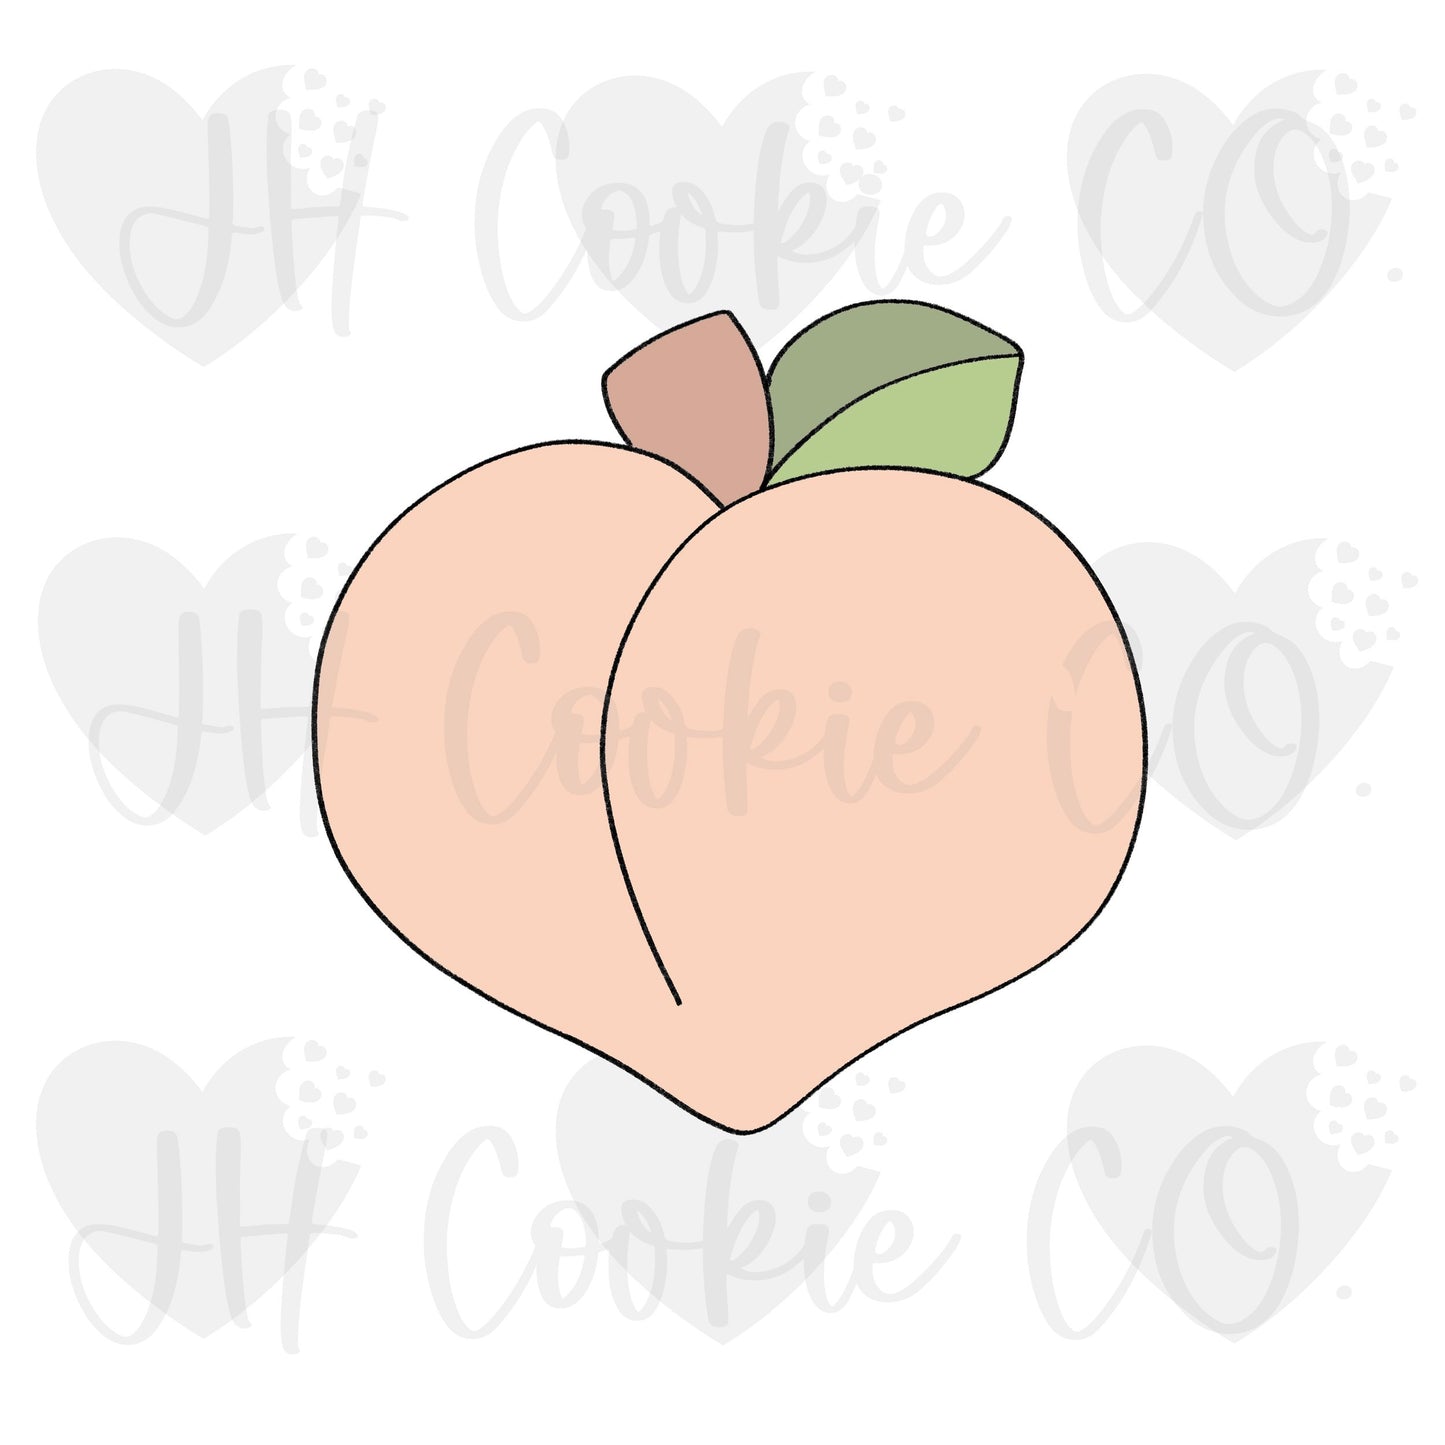 Peach [emoji set] - Cookie Cutter